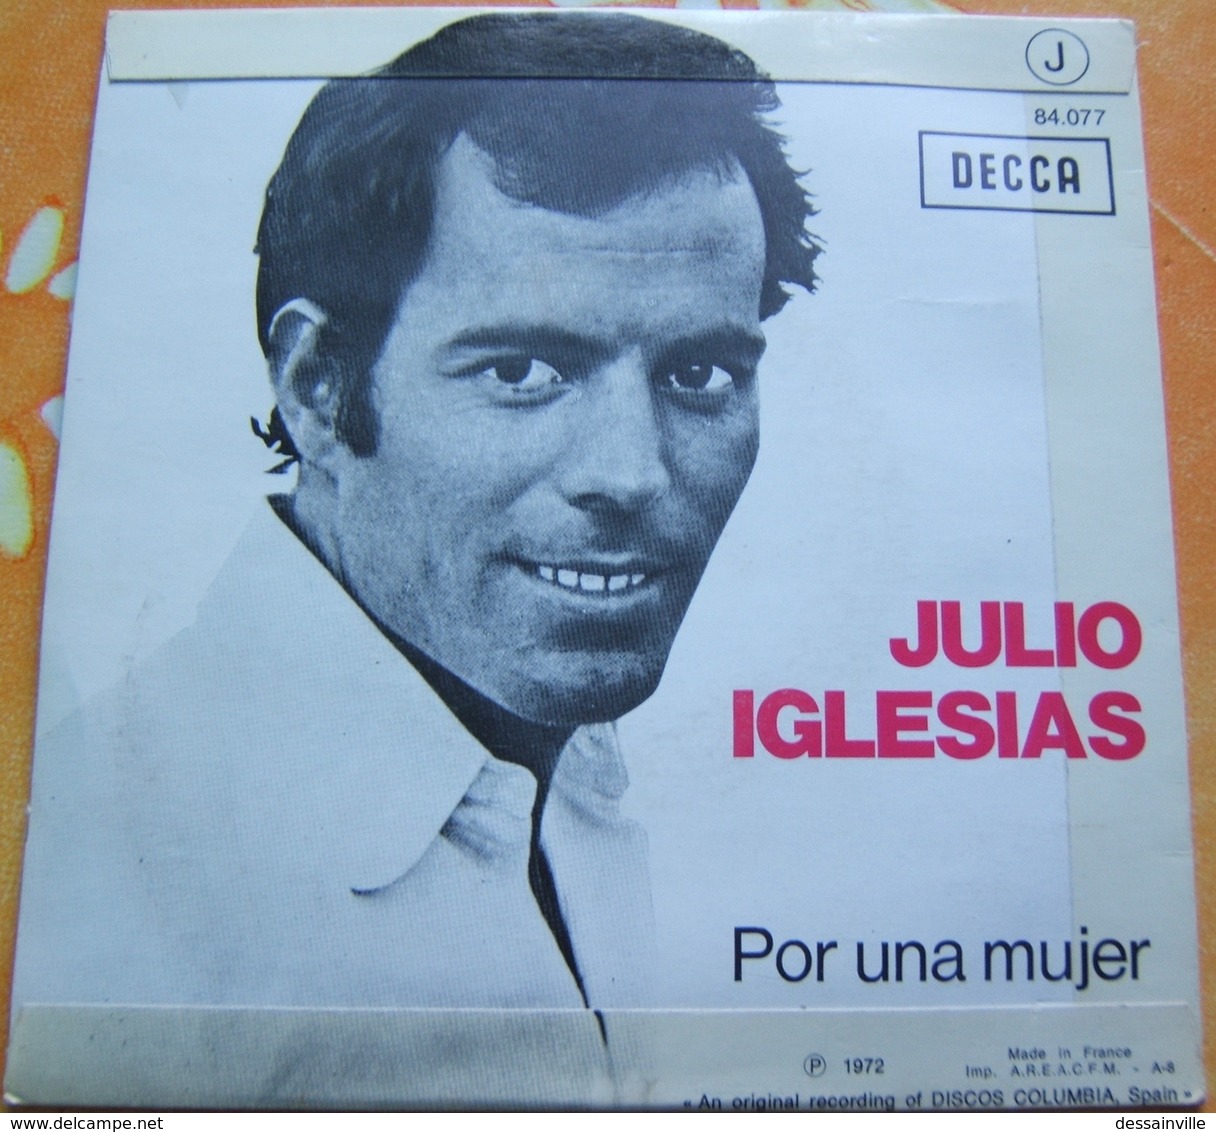 45 Tours JULIO IGLESIAS - UN CANTO A GALICIA / POR UNA MUJER - DECCA 84.077 - Autres - Musique Espagnole